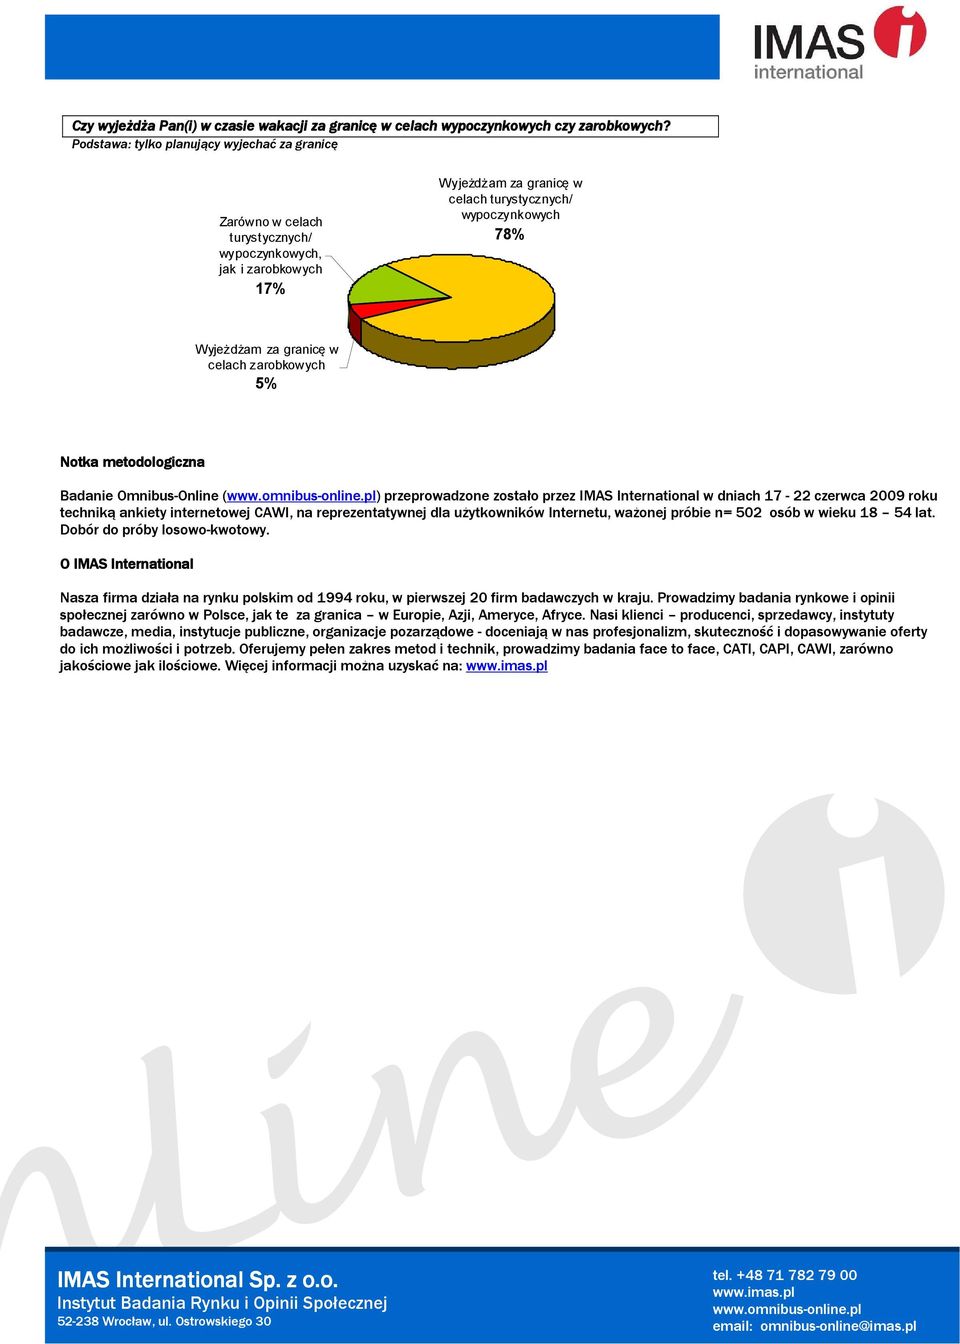 granicę w celach zarobkowych 5% Notka metodologiczna Badanie Omnibus-Online () przeprowadzone zostało przez IMAS International w dniach 17-22 czerwca 2009 roku techniką ankiety internetowej CAWI, na